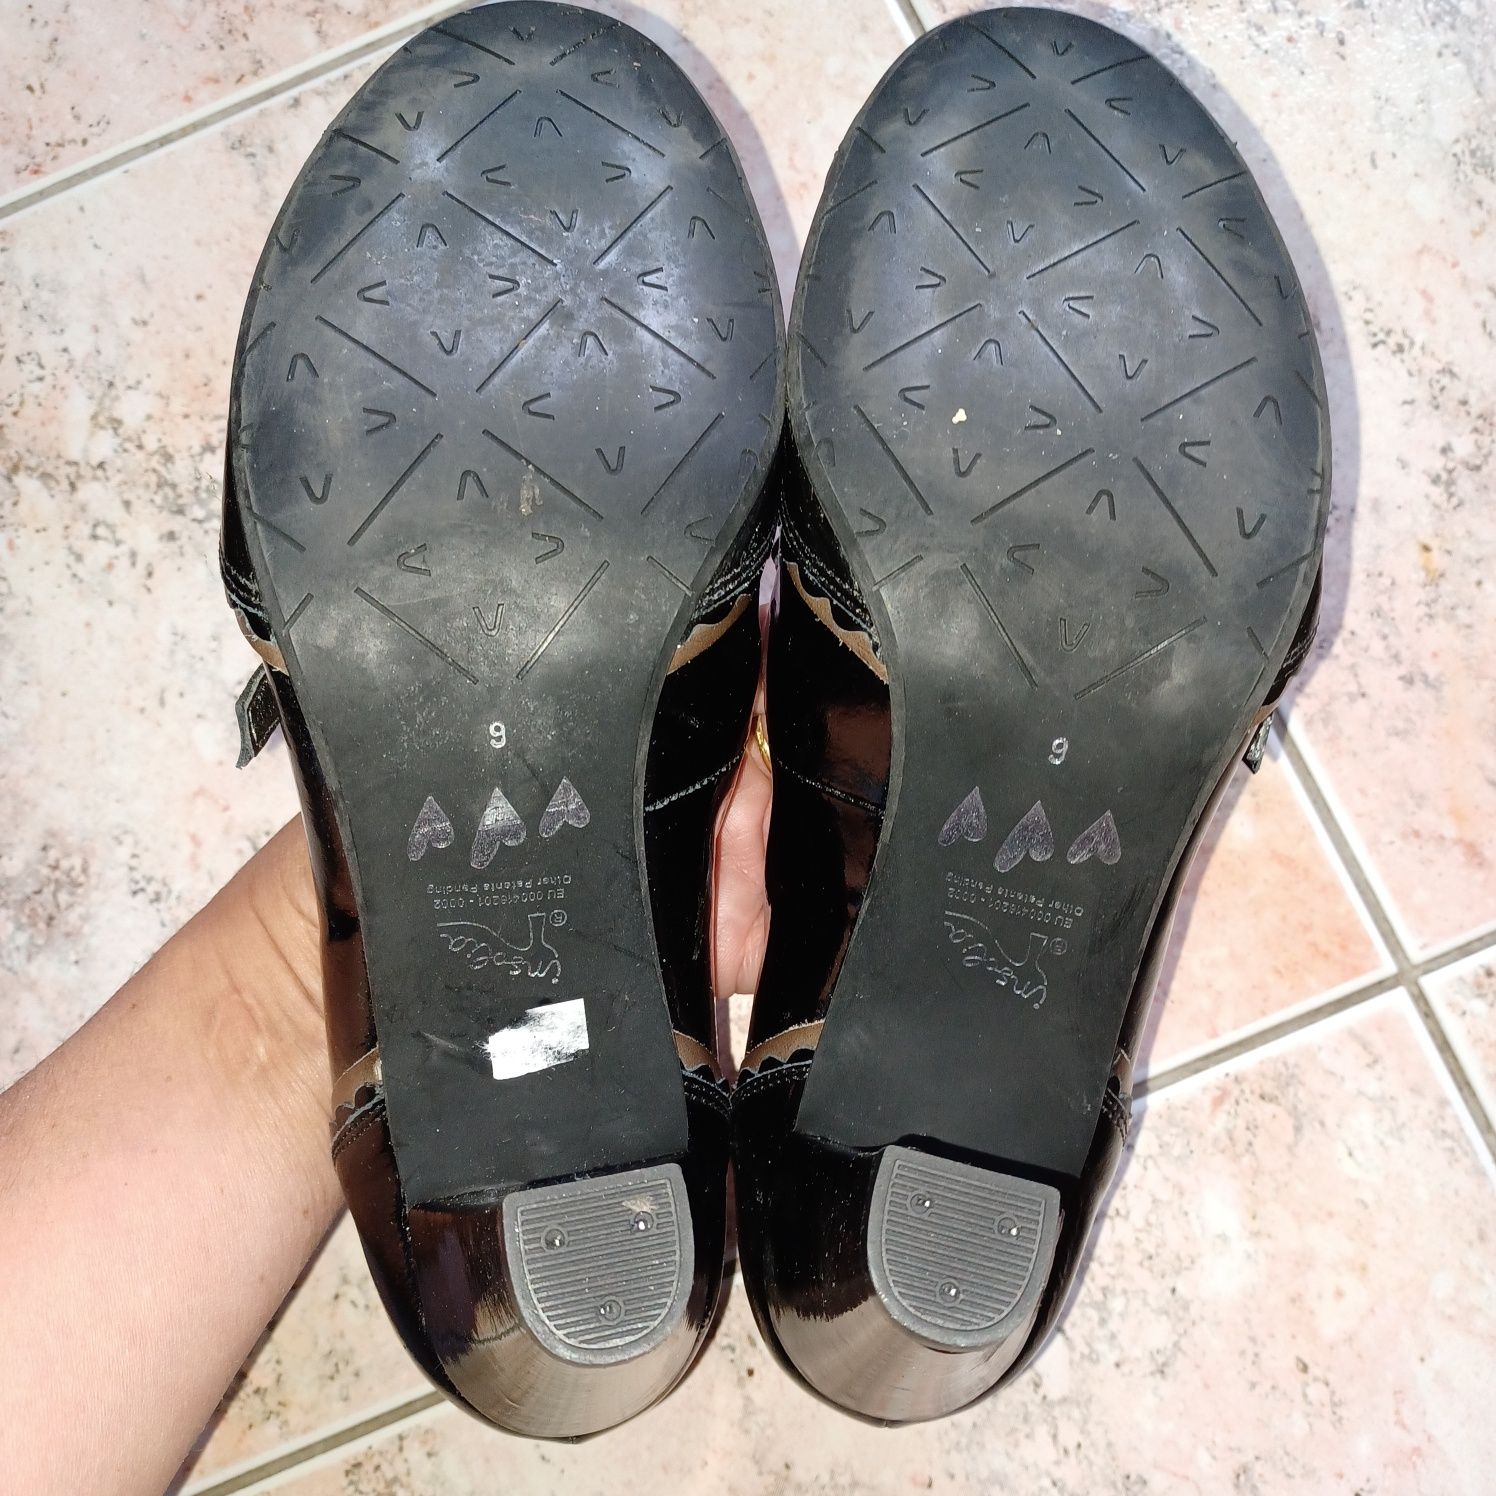 Buty firmy Per Una skórzane jak nowe